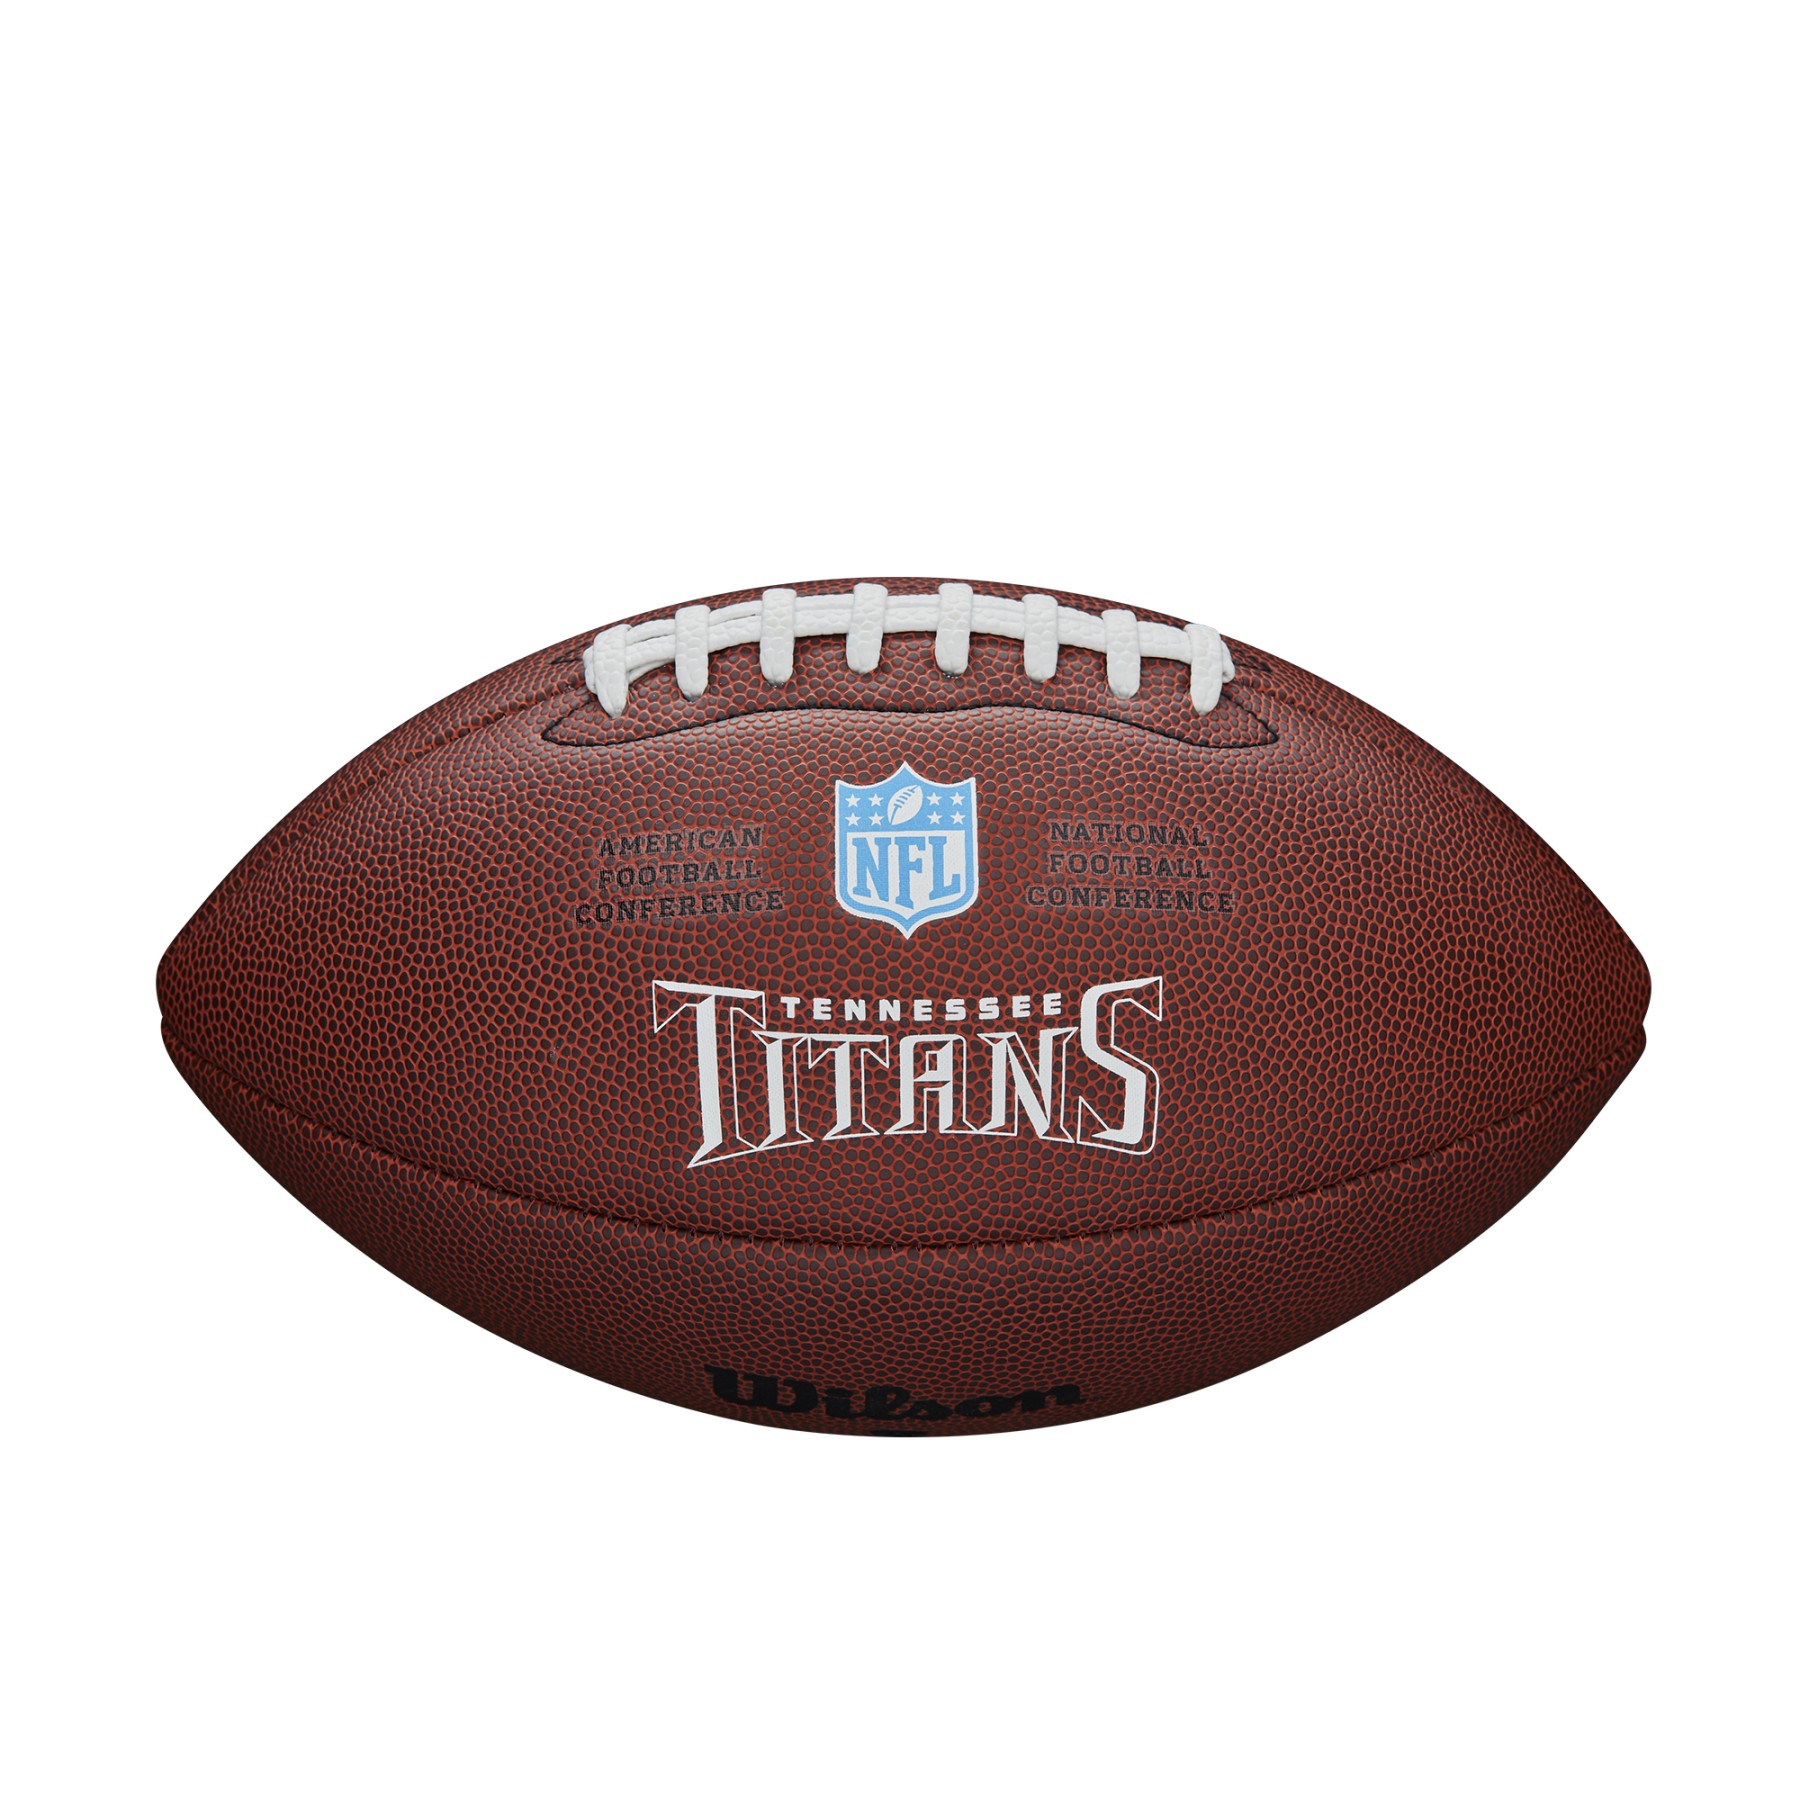 Bola Wilson Titans NFL com licença